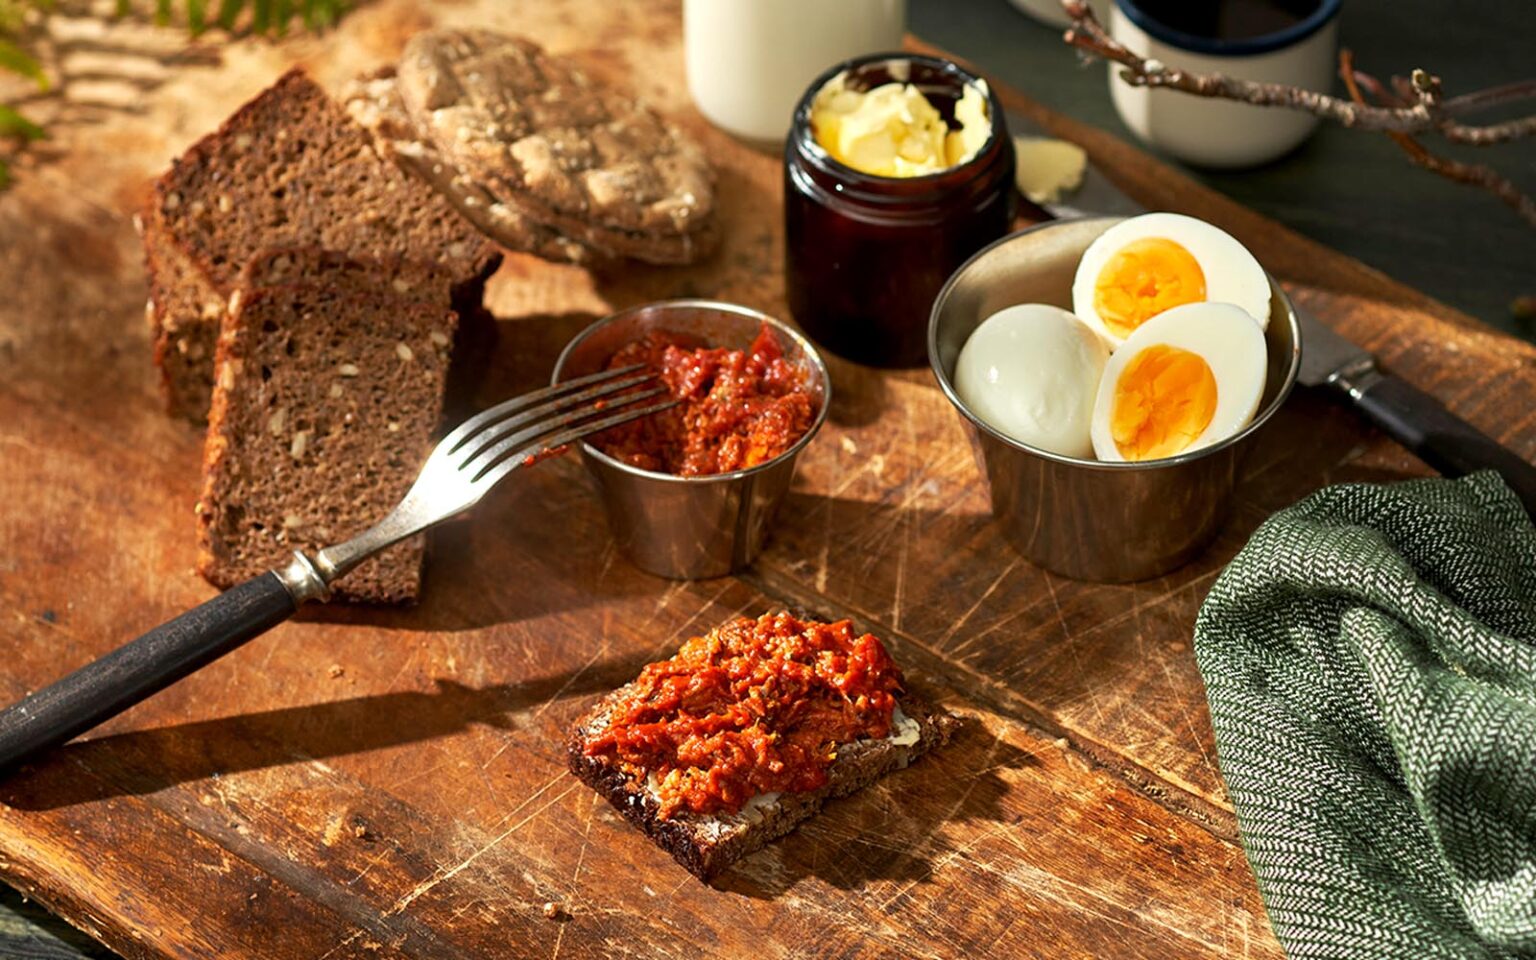 Abba grovhackad makrillfilé i tomatsås på en träbricka. Dels på en smörgås, men också i en liten skål. Ägg, bröd och smör syns bredvid.